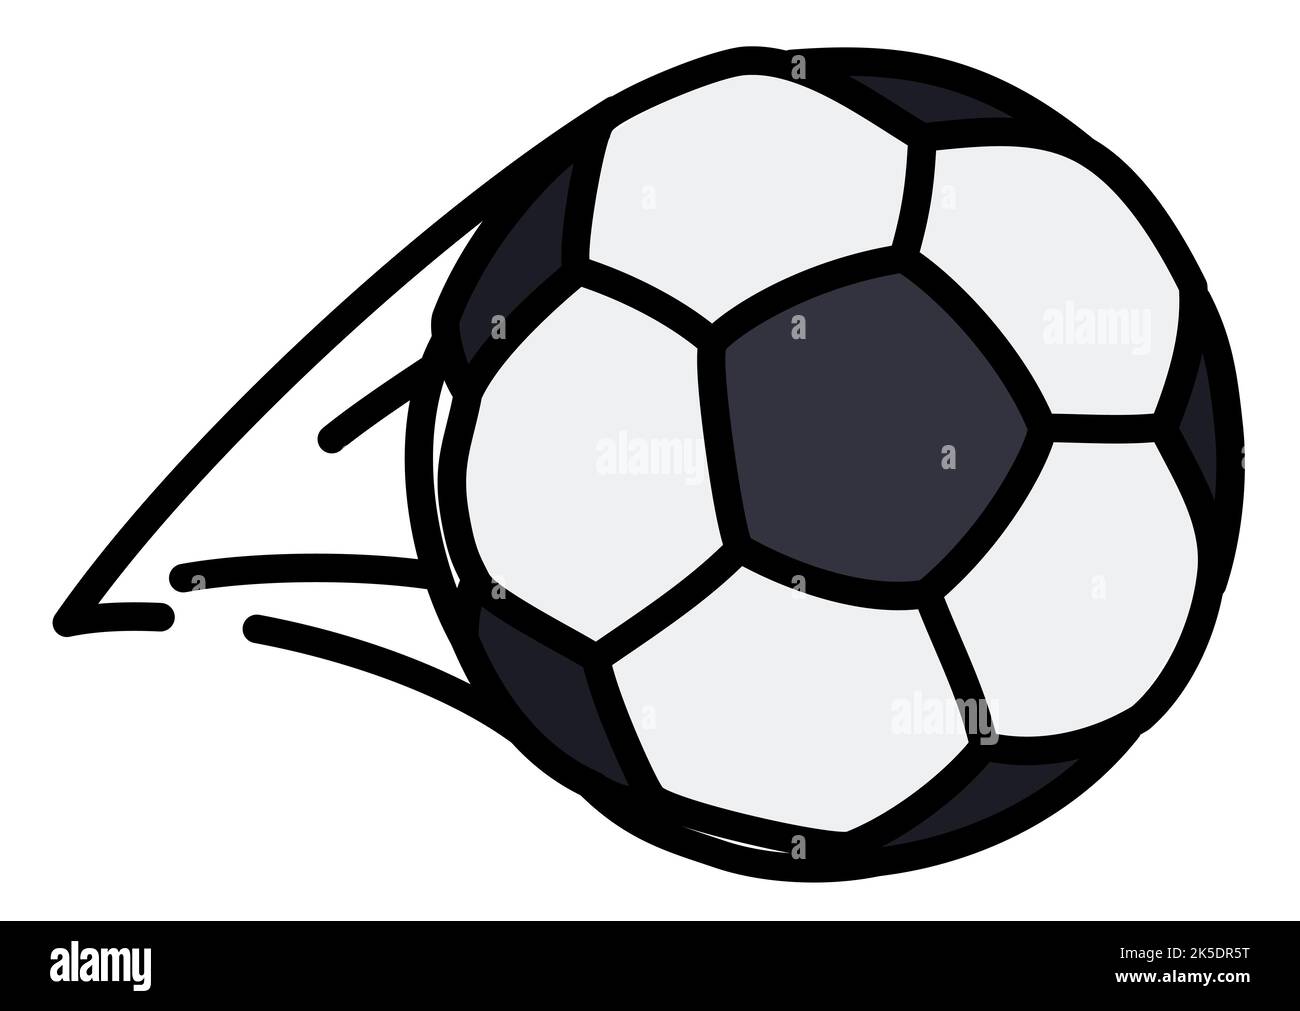 Schneller Fußball mit Speed Tail, in flacher Form mit Konturen auf weißem Hintergrund. Stock Vektor